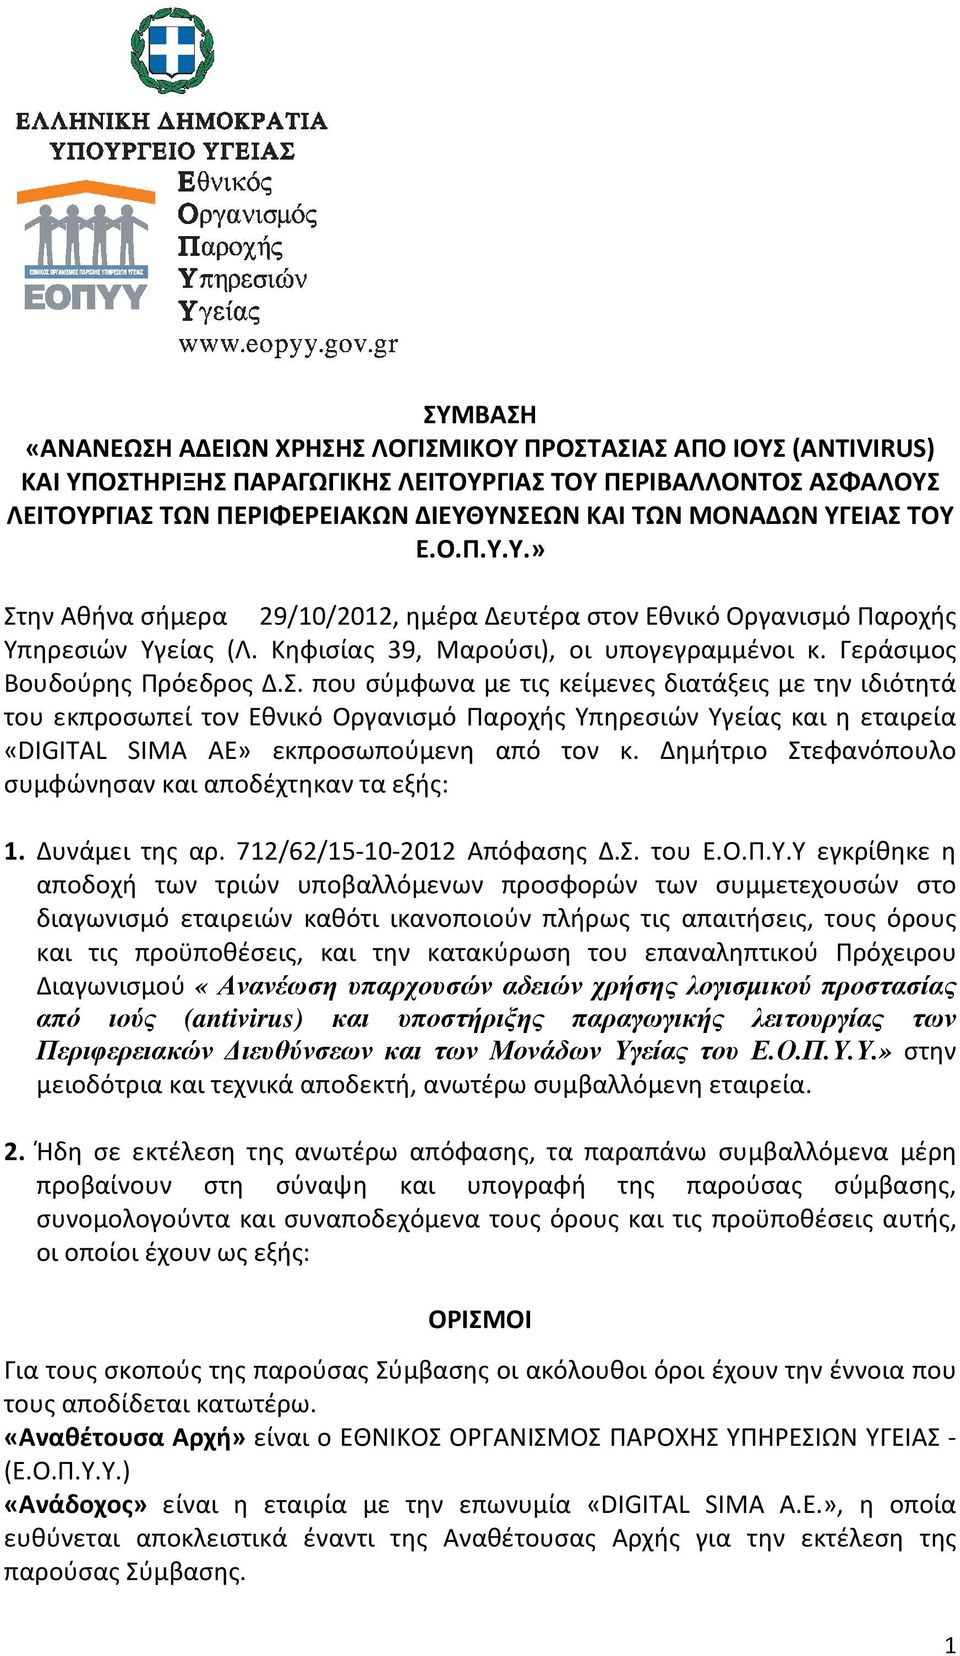 Δημήτριο Στεφανόπουλο συμφώνησαν και αποδέχτηκαν τα εξής: 1. Δυνάμει της αρ. 712/62/15-10-2012 Απόφασης Δ.Σ. του Ε.Ο.Π.Υ.